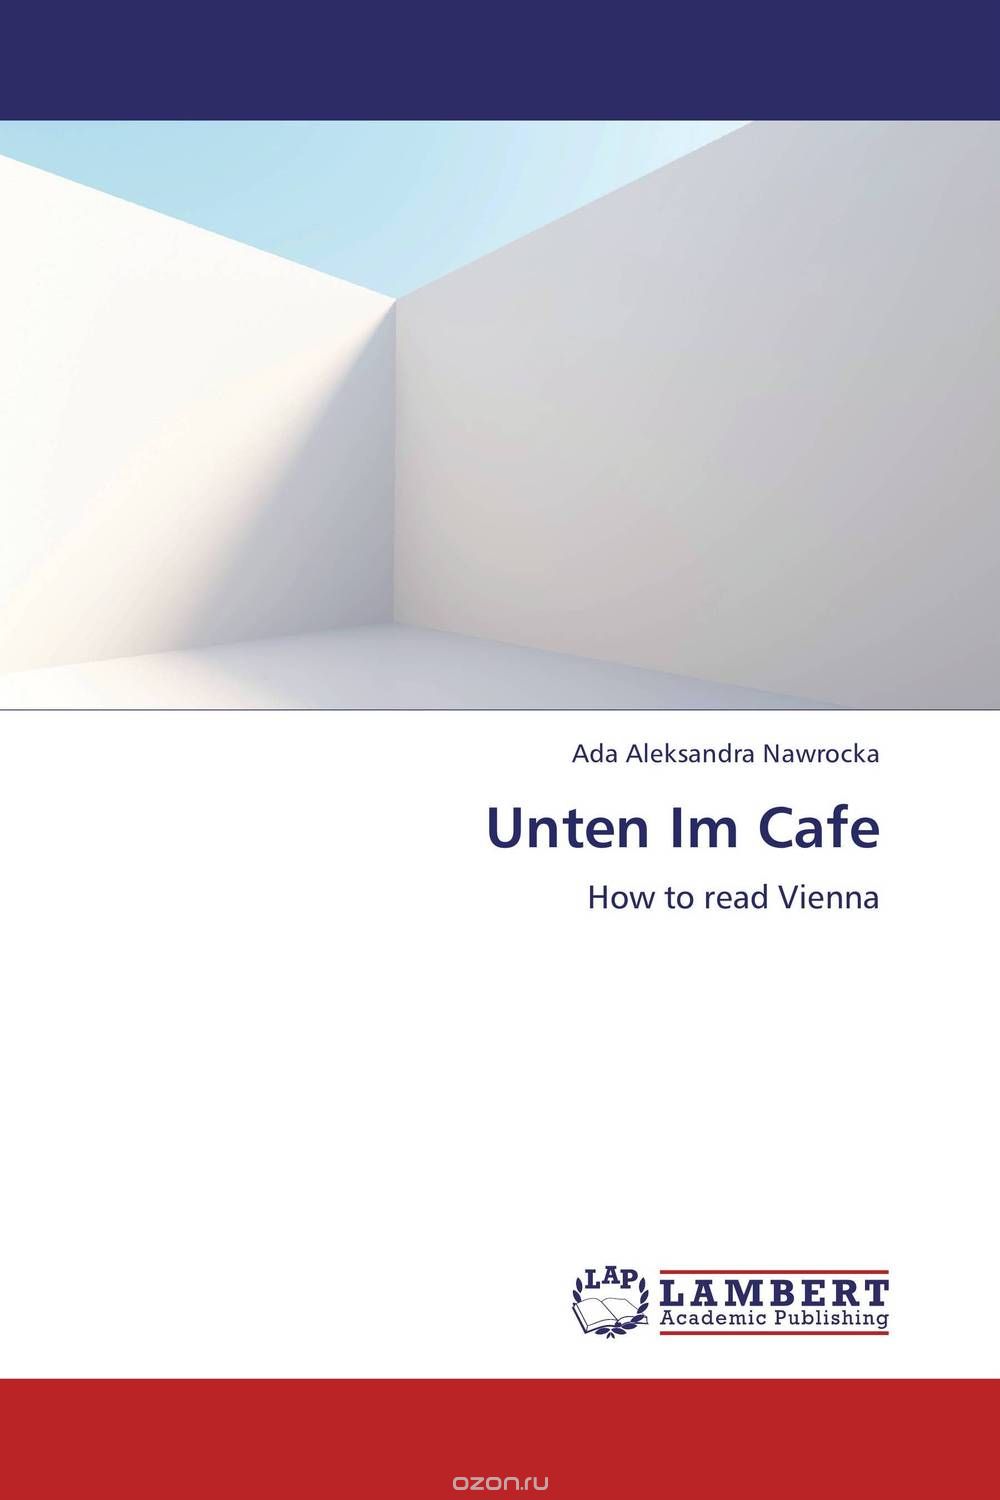 Скачать книгу "Unten Im Cafe"